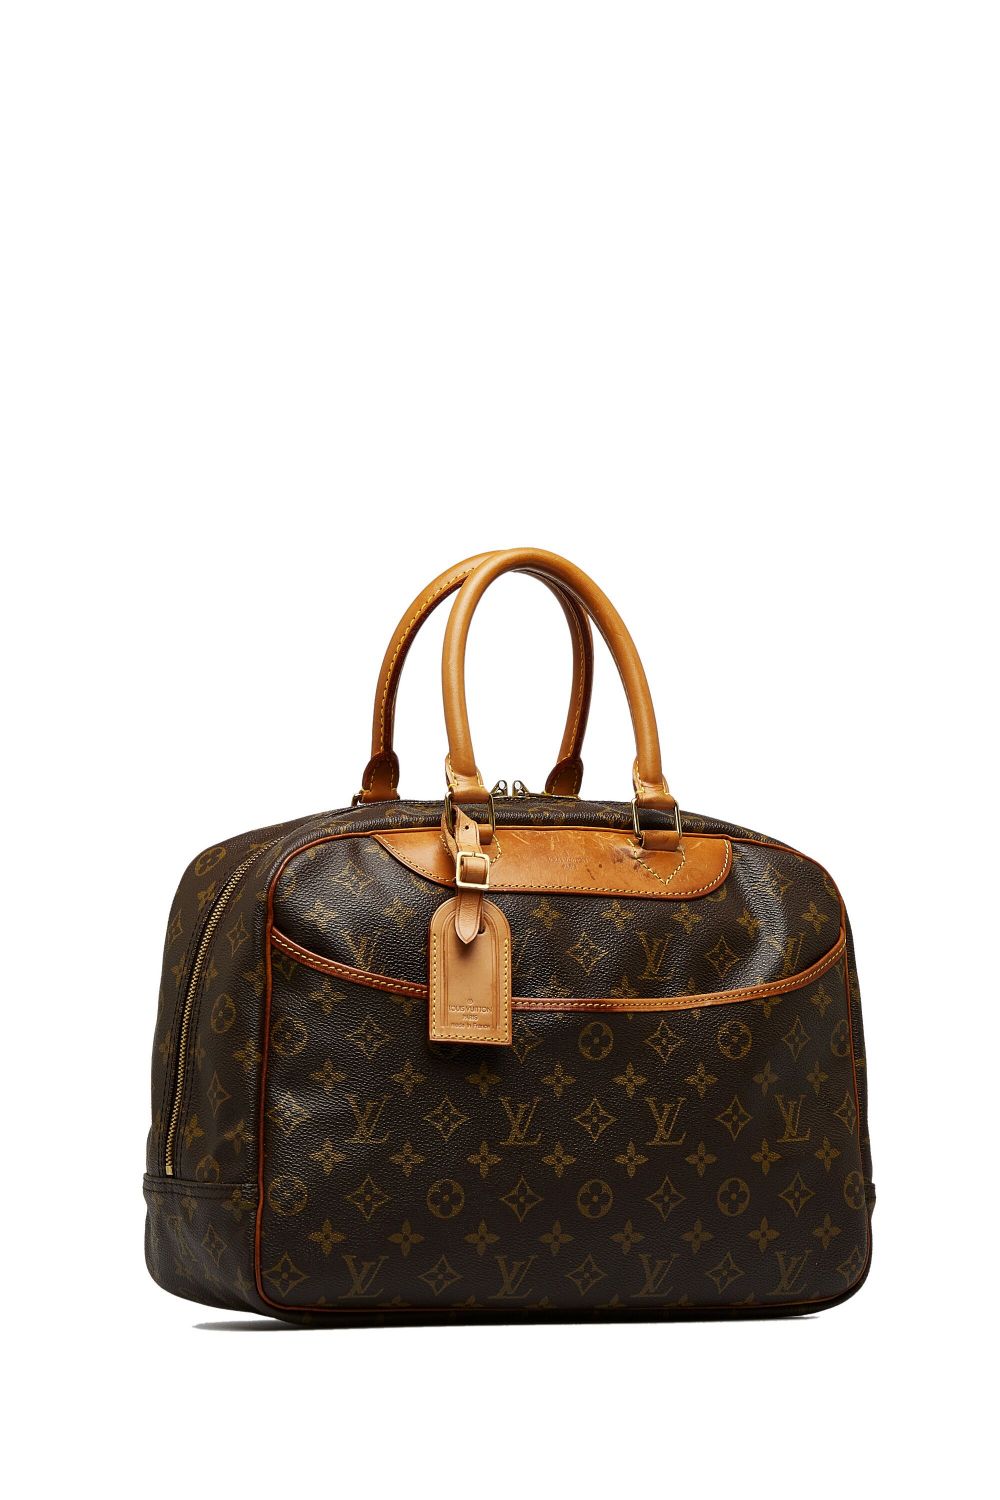 Louis Vuitton Pre-Owned 1994 Pre-Owned Louis Vuitton Monogram Deauville handbag - Bruin